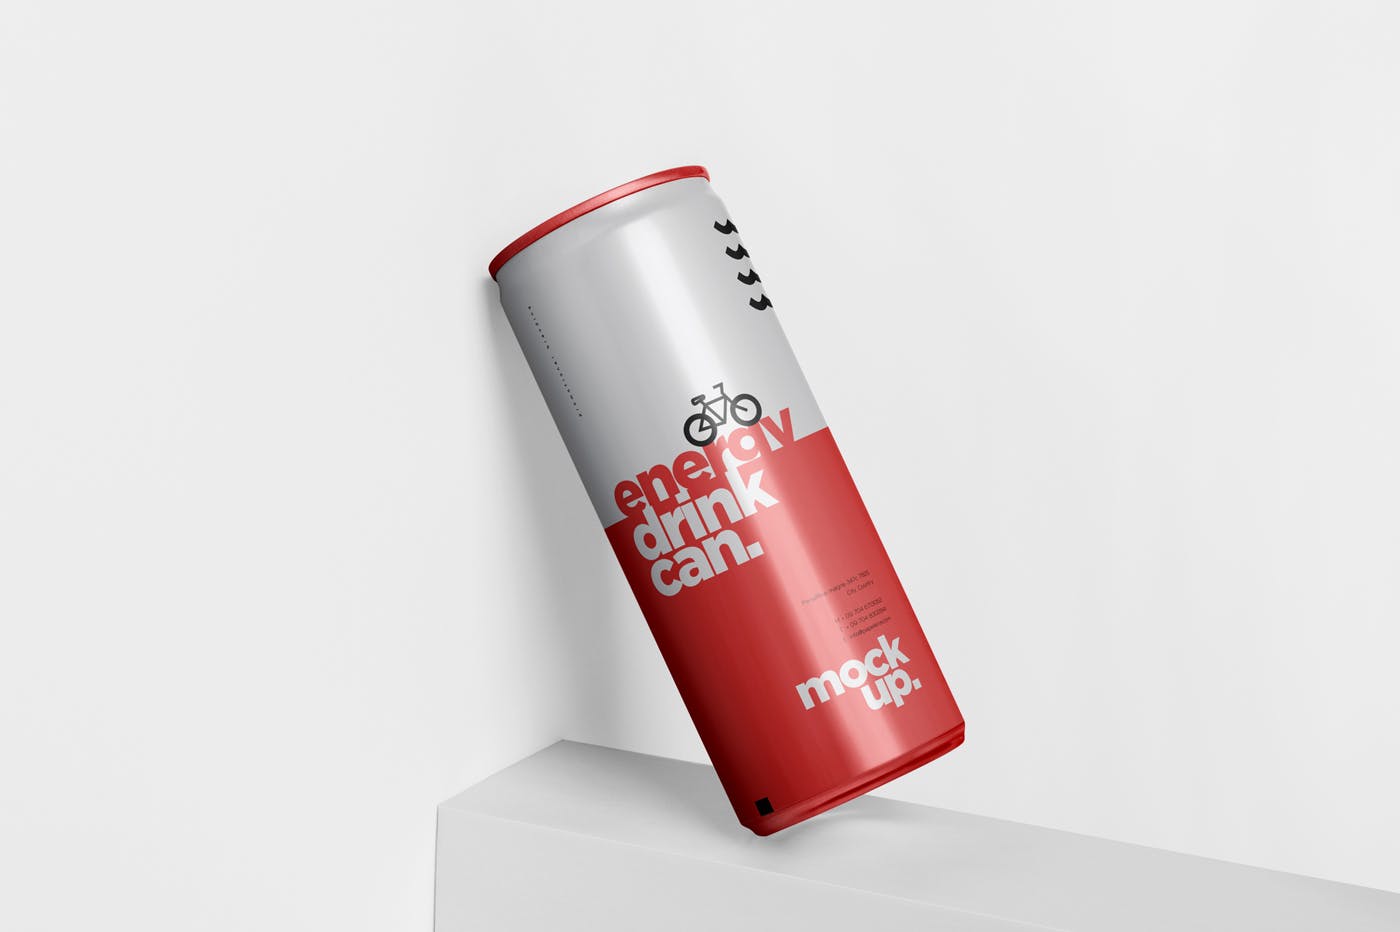 能量饮料易拉罐罐头外观设计蚂蚁素材精选模板 Energy Drink Can Mock-Up – 250 ml插图(3)